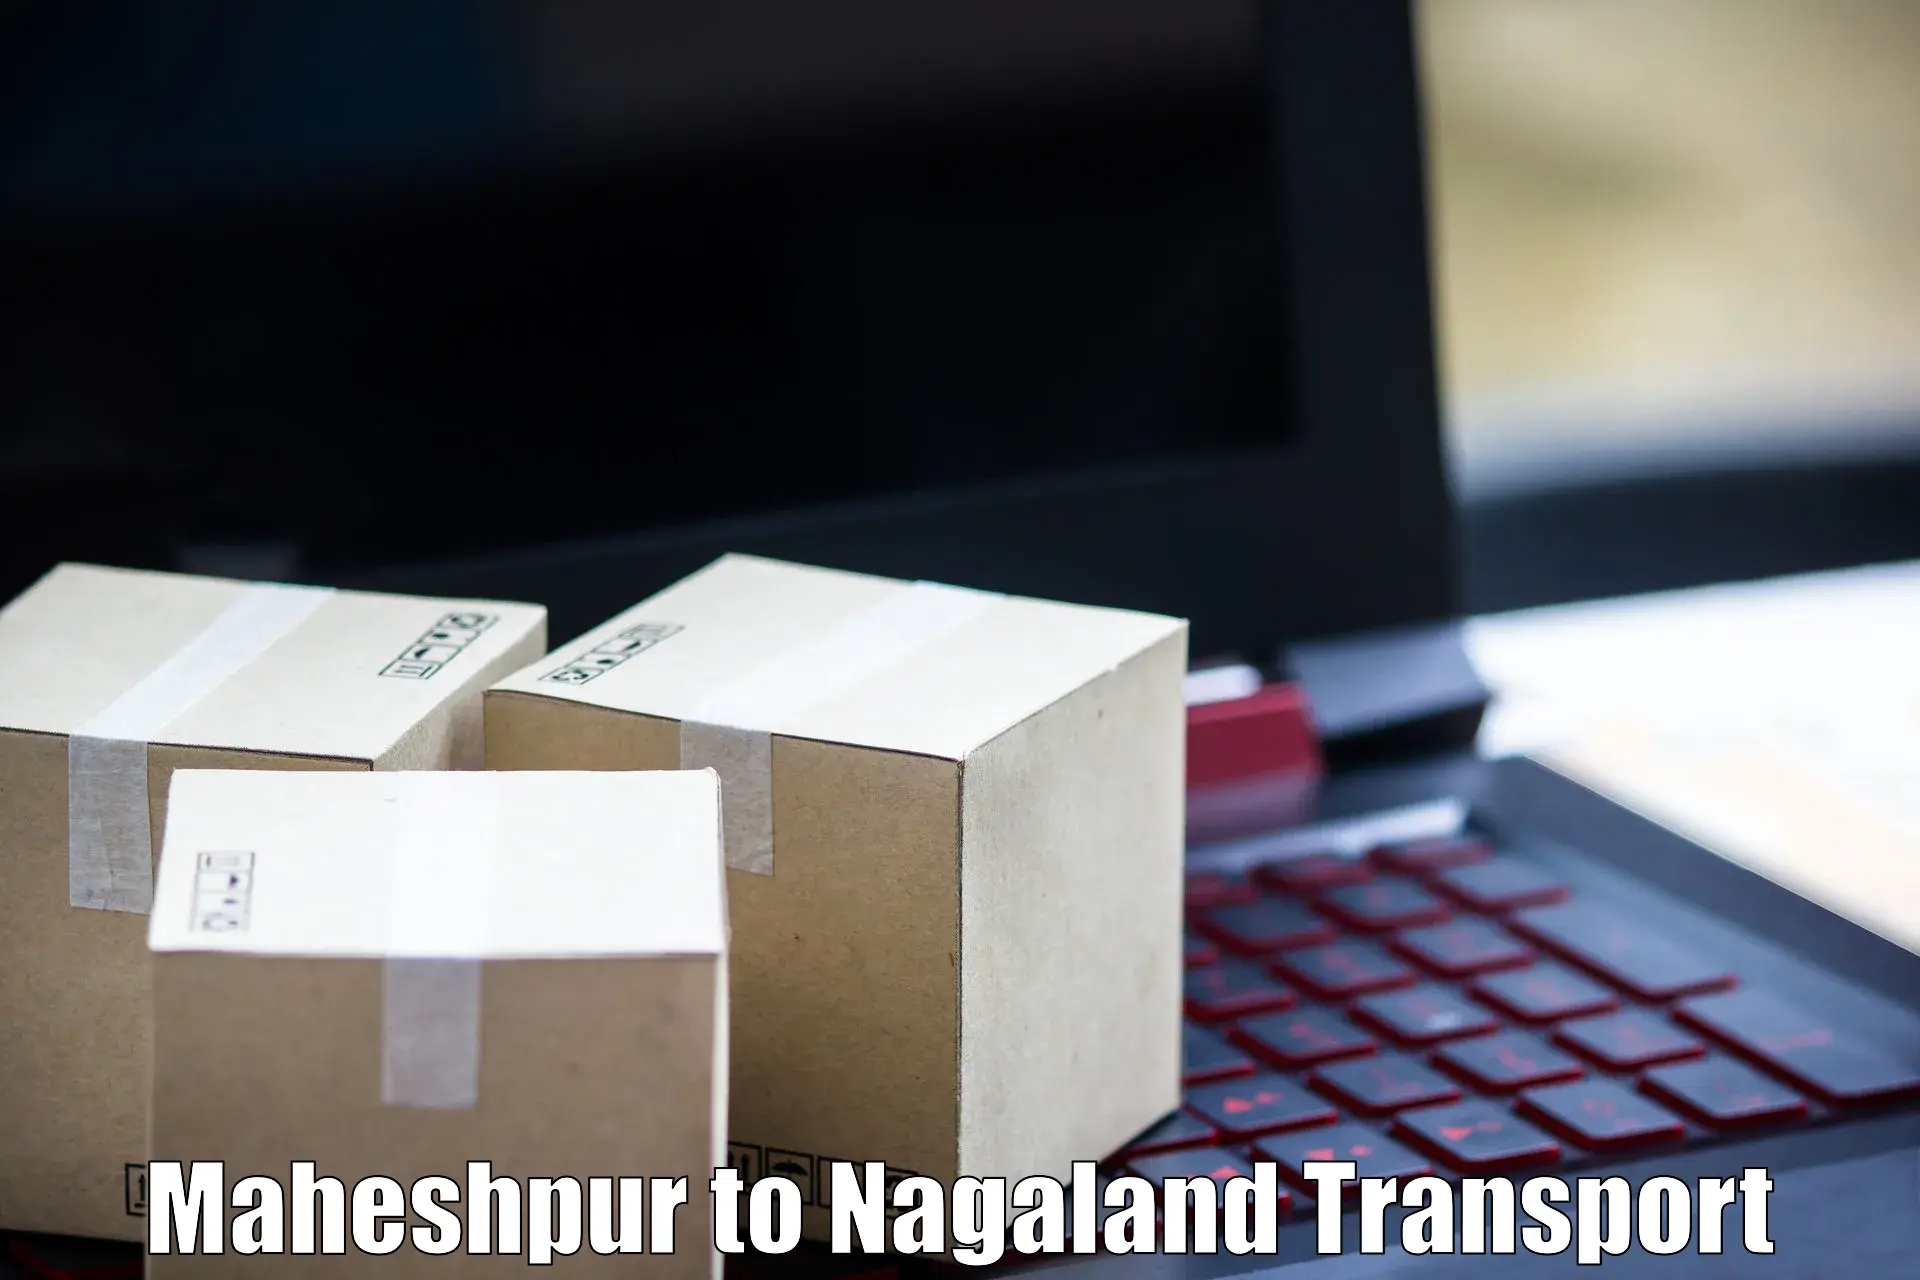 Transport shared services Maheshpur to Dimapur